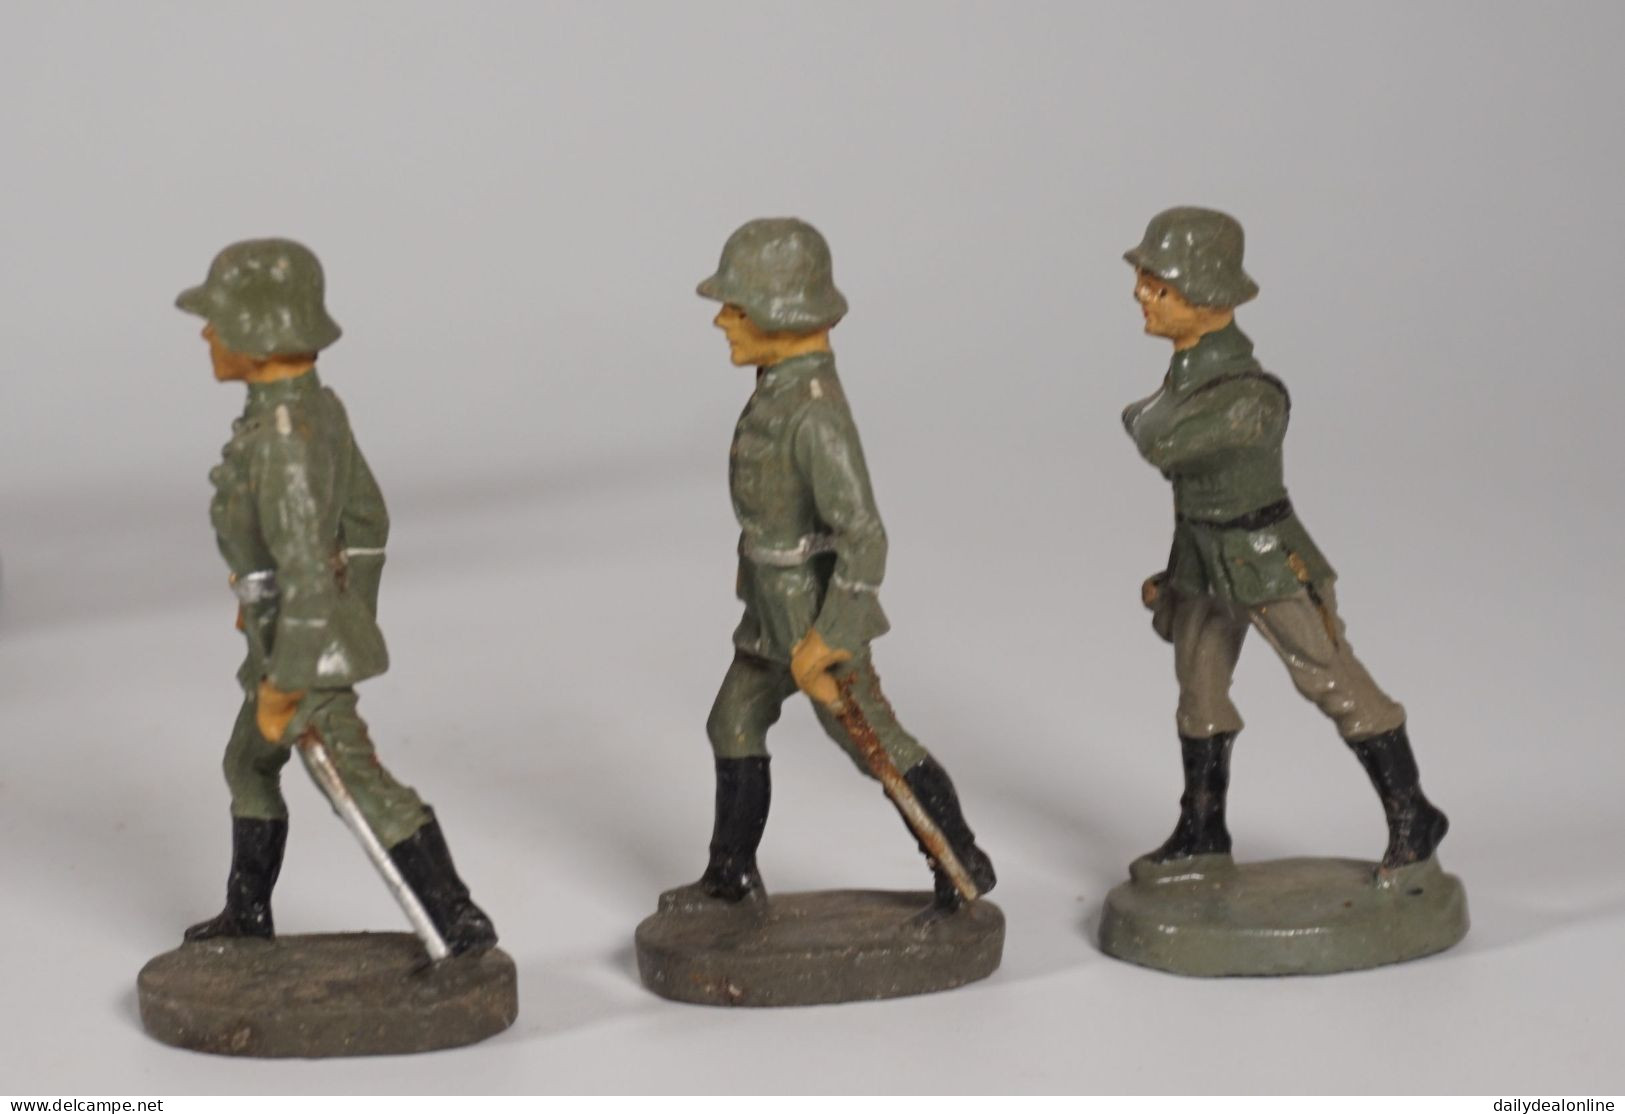 32-tlg. Konvolut Lineol Elastolin Soldaten marschierend liegend 1x mit Fahne 2. WK Wehrmacht Bastlerware